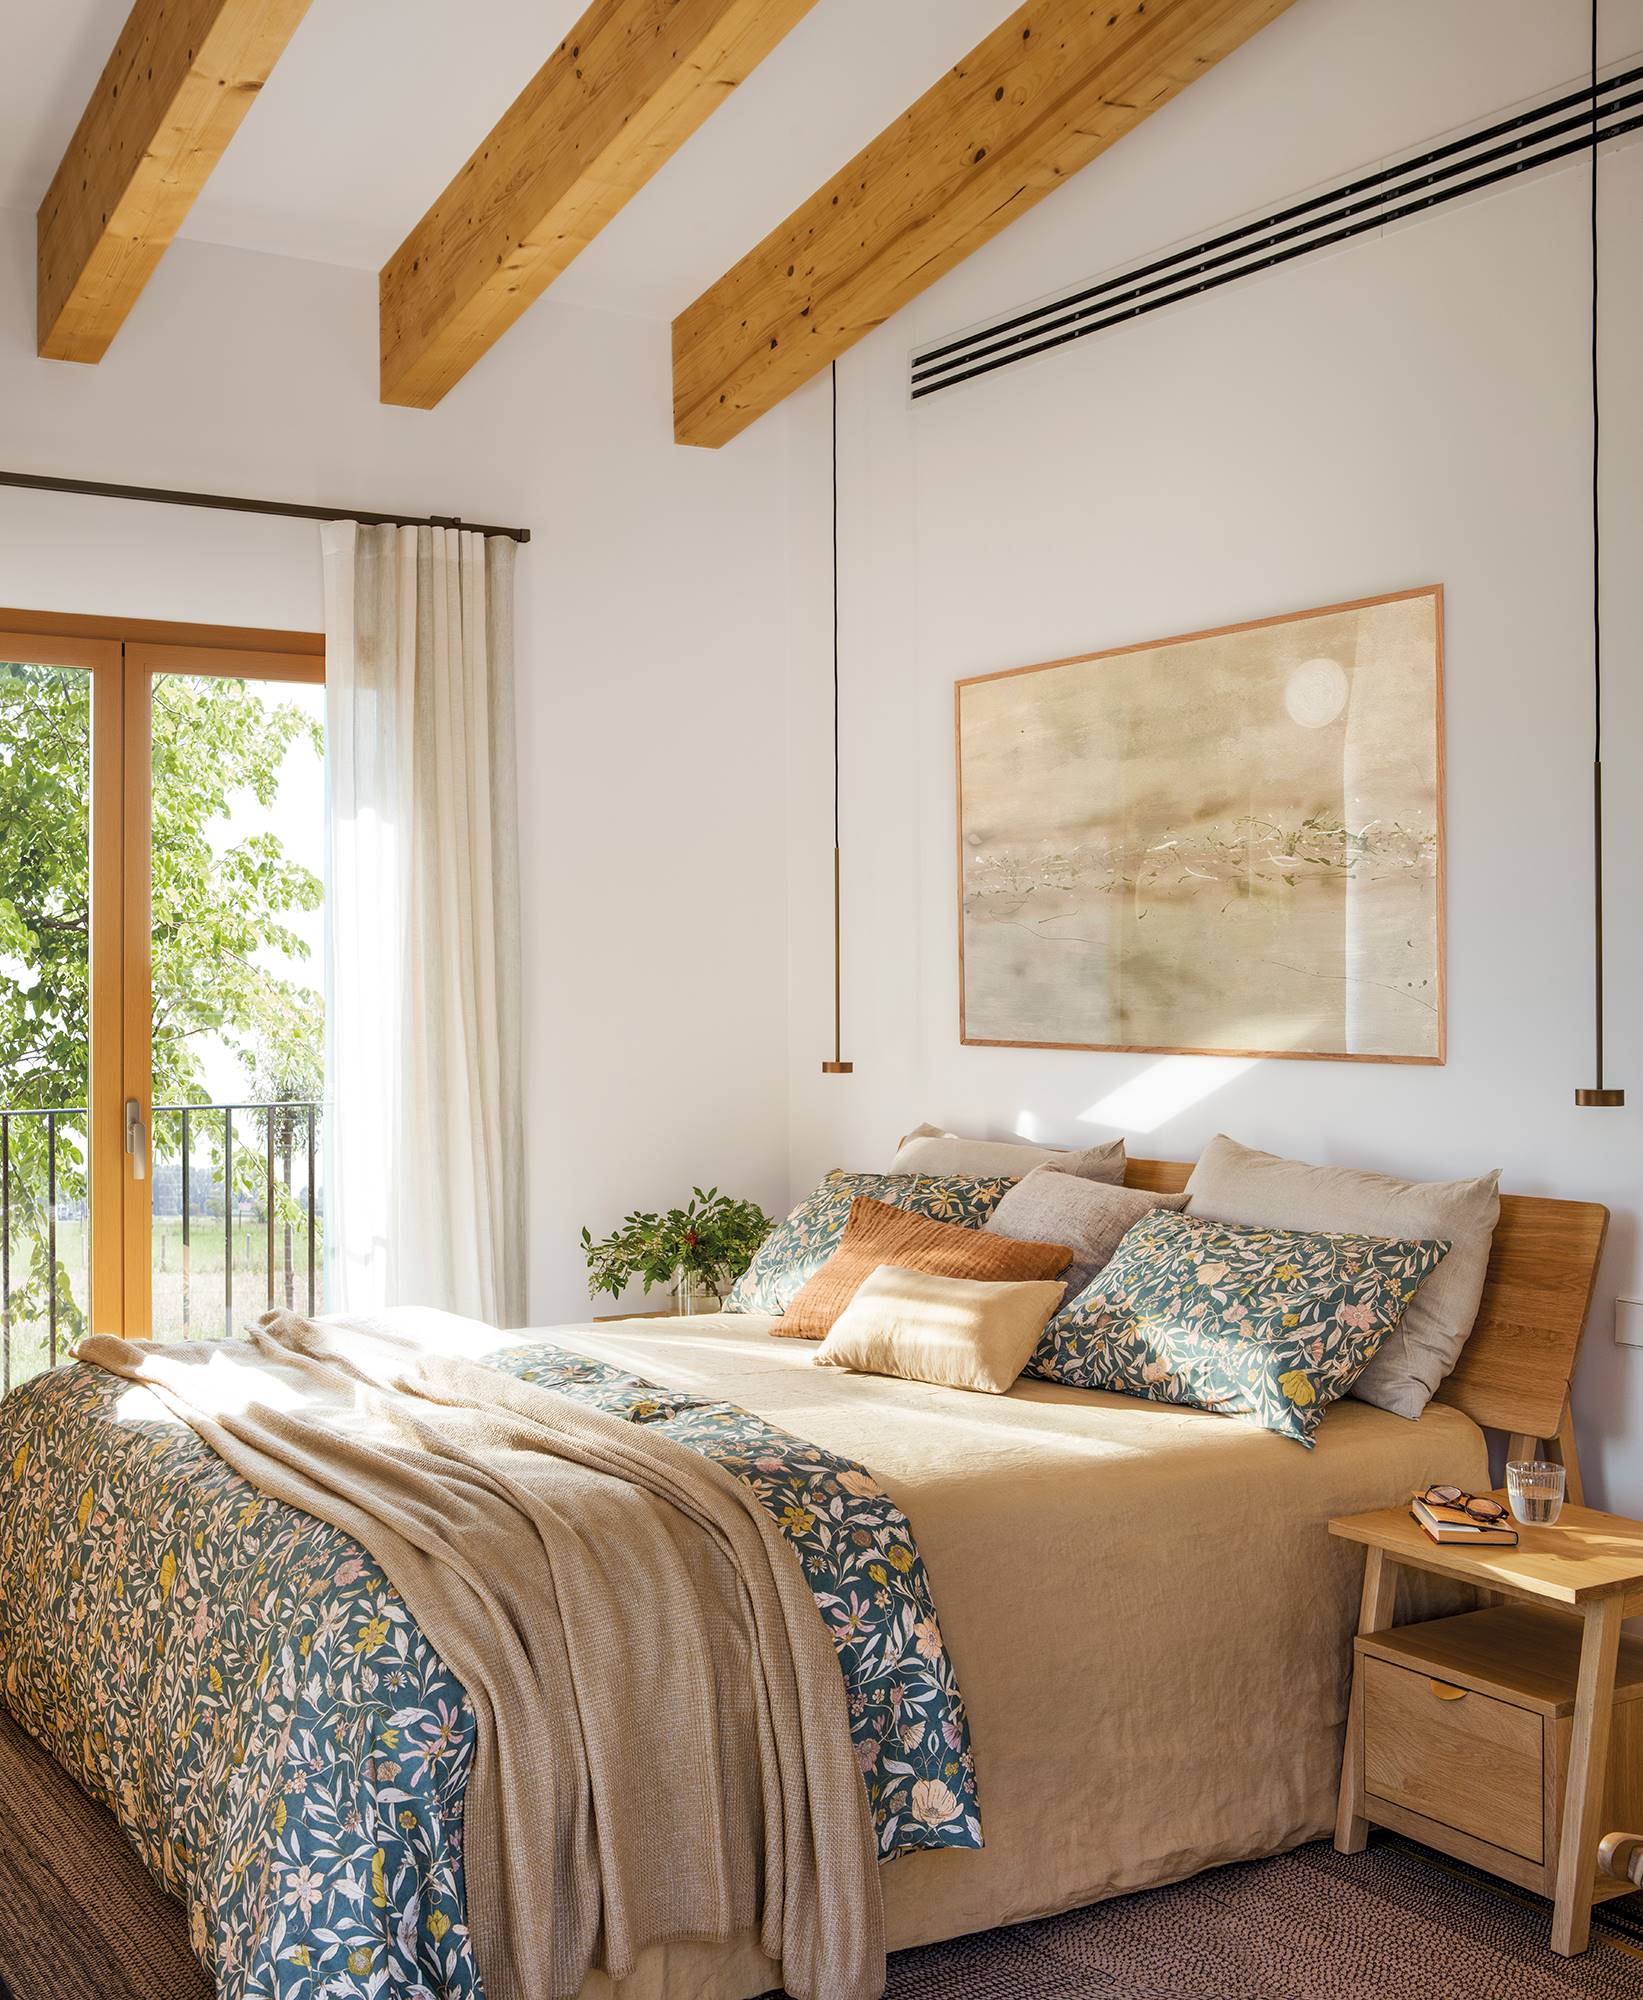 Dormitorio decorador con muebles en madera y tonos tierra